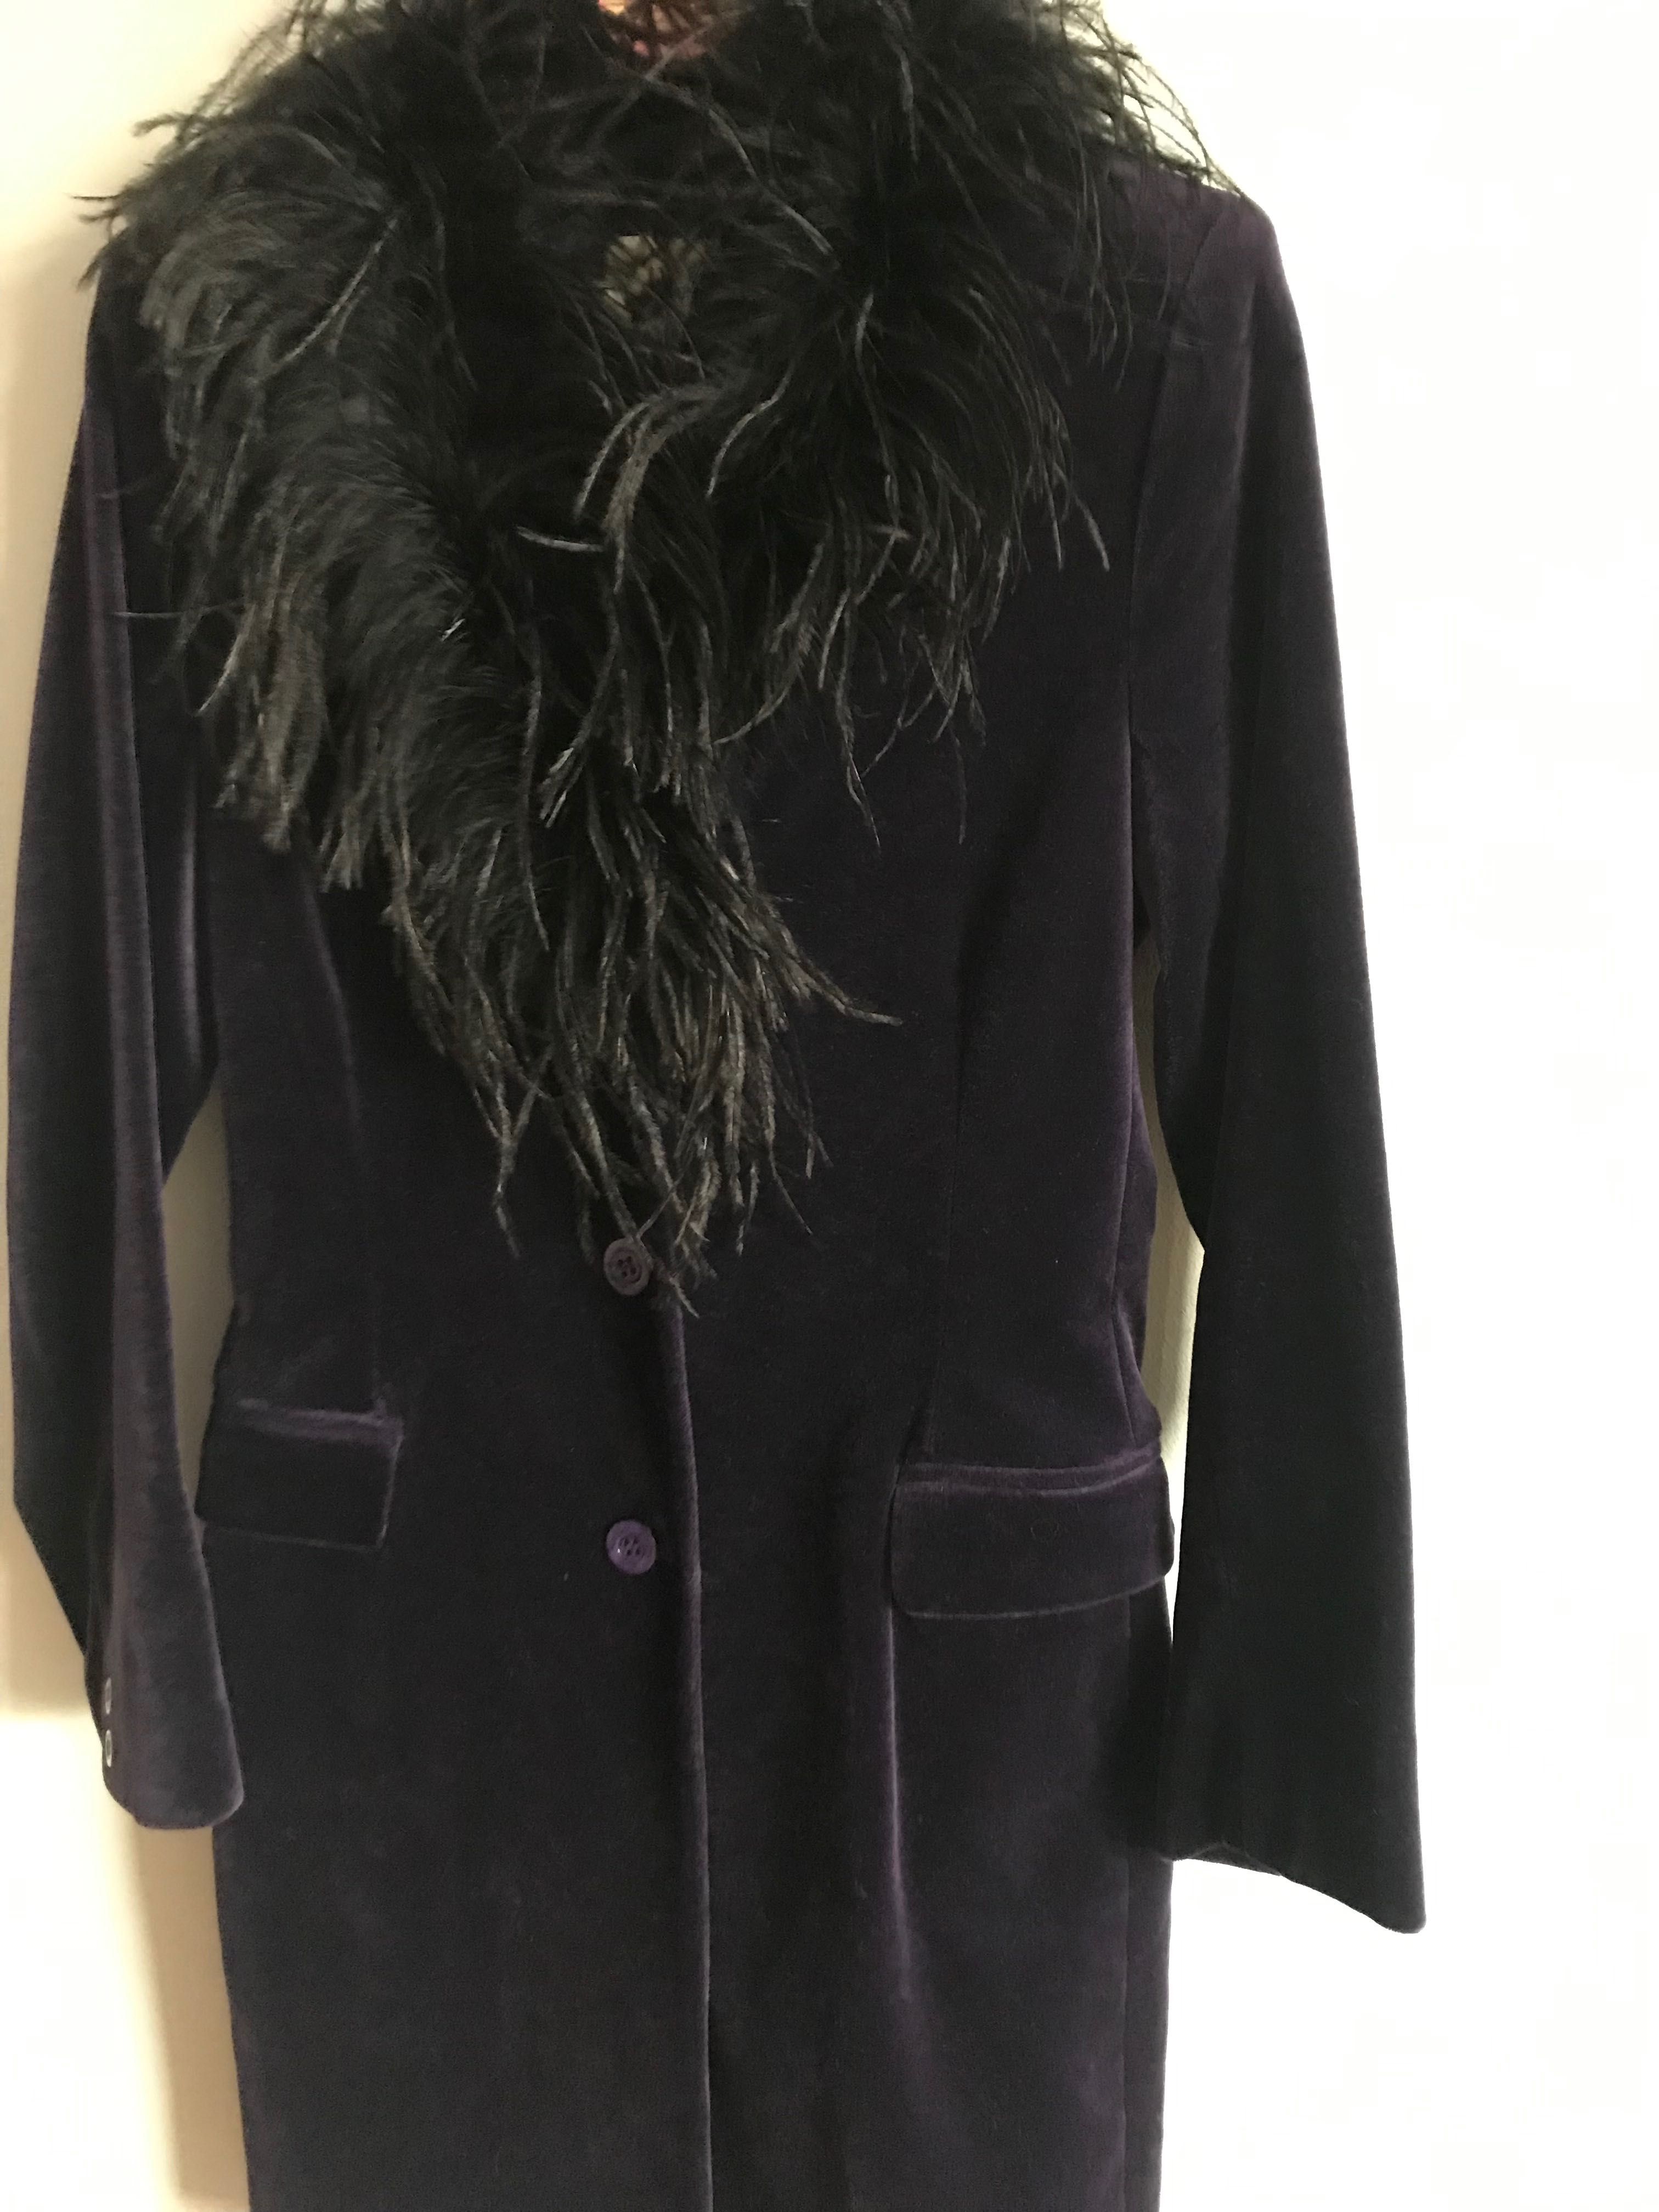 Fioletowy aksamitny płaszcz S z piórami strusia styl lat 70 tych